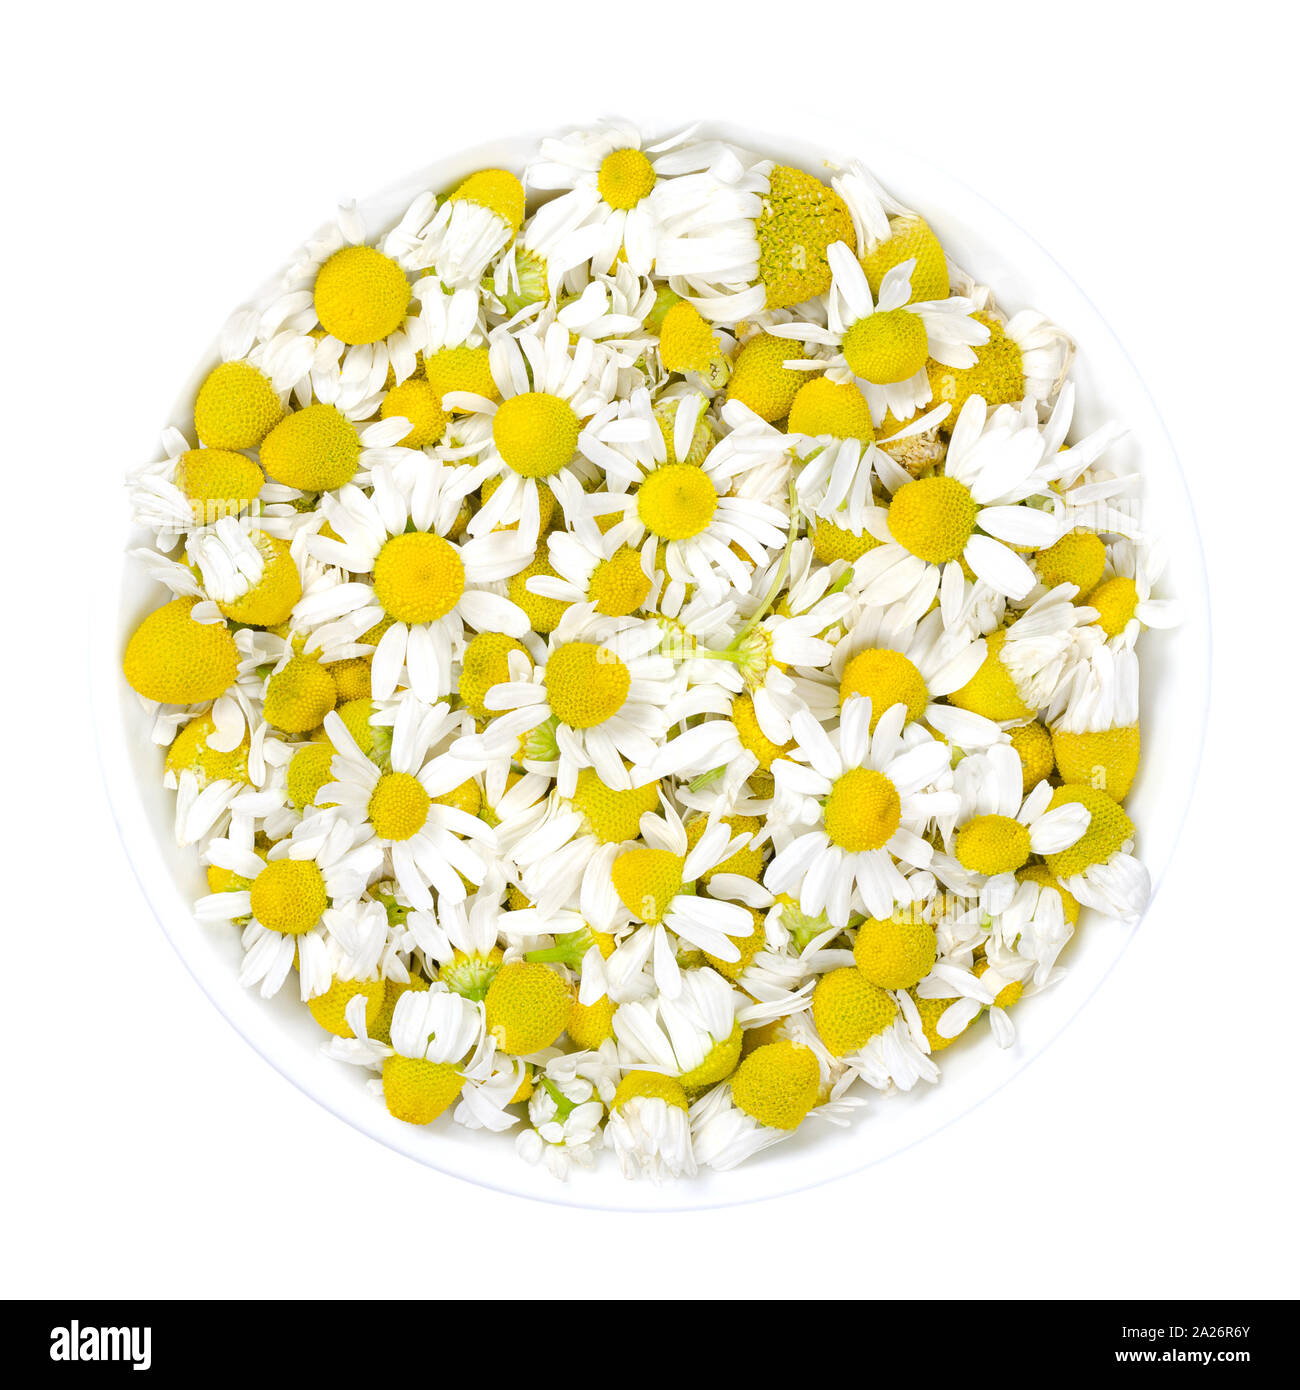 La Camomilla fiori in vaso bianco. Freschi di fiori di camomilla, Matricaria chamomilla, utilizzato per infusioni di erbe e nella medicina tradizionale. Foto Stock